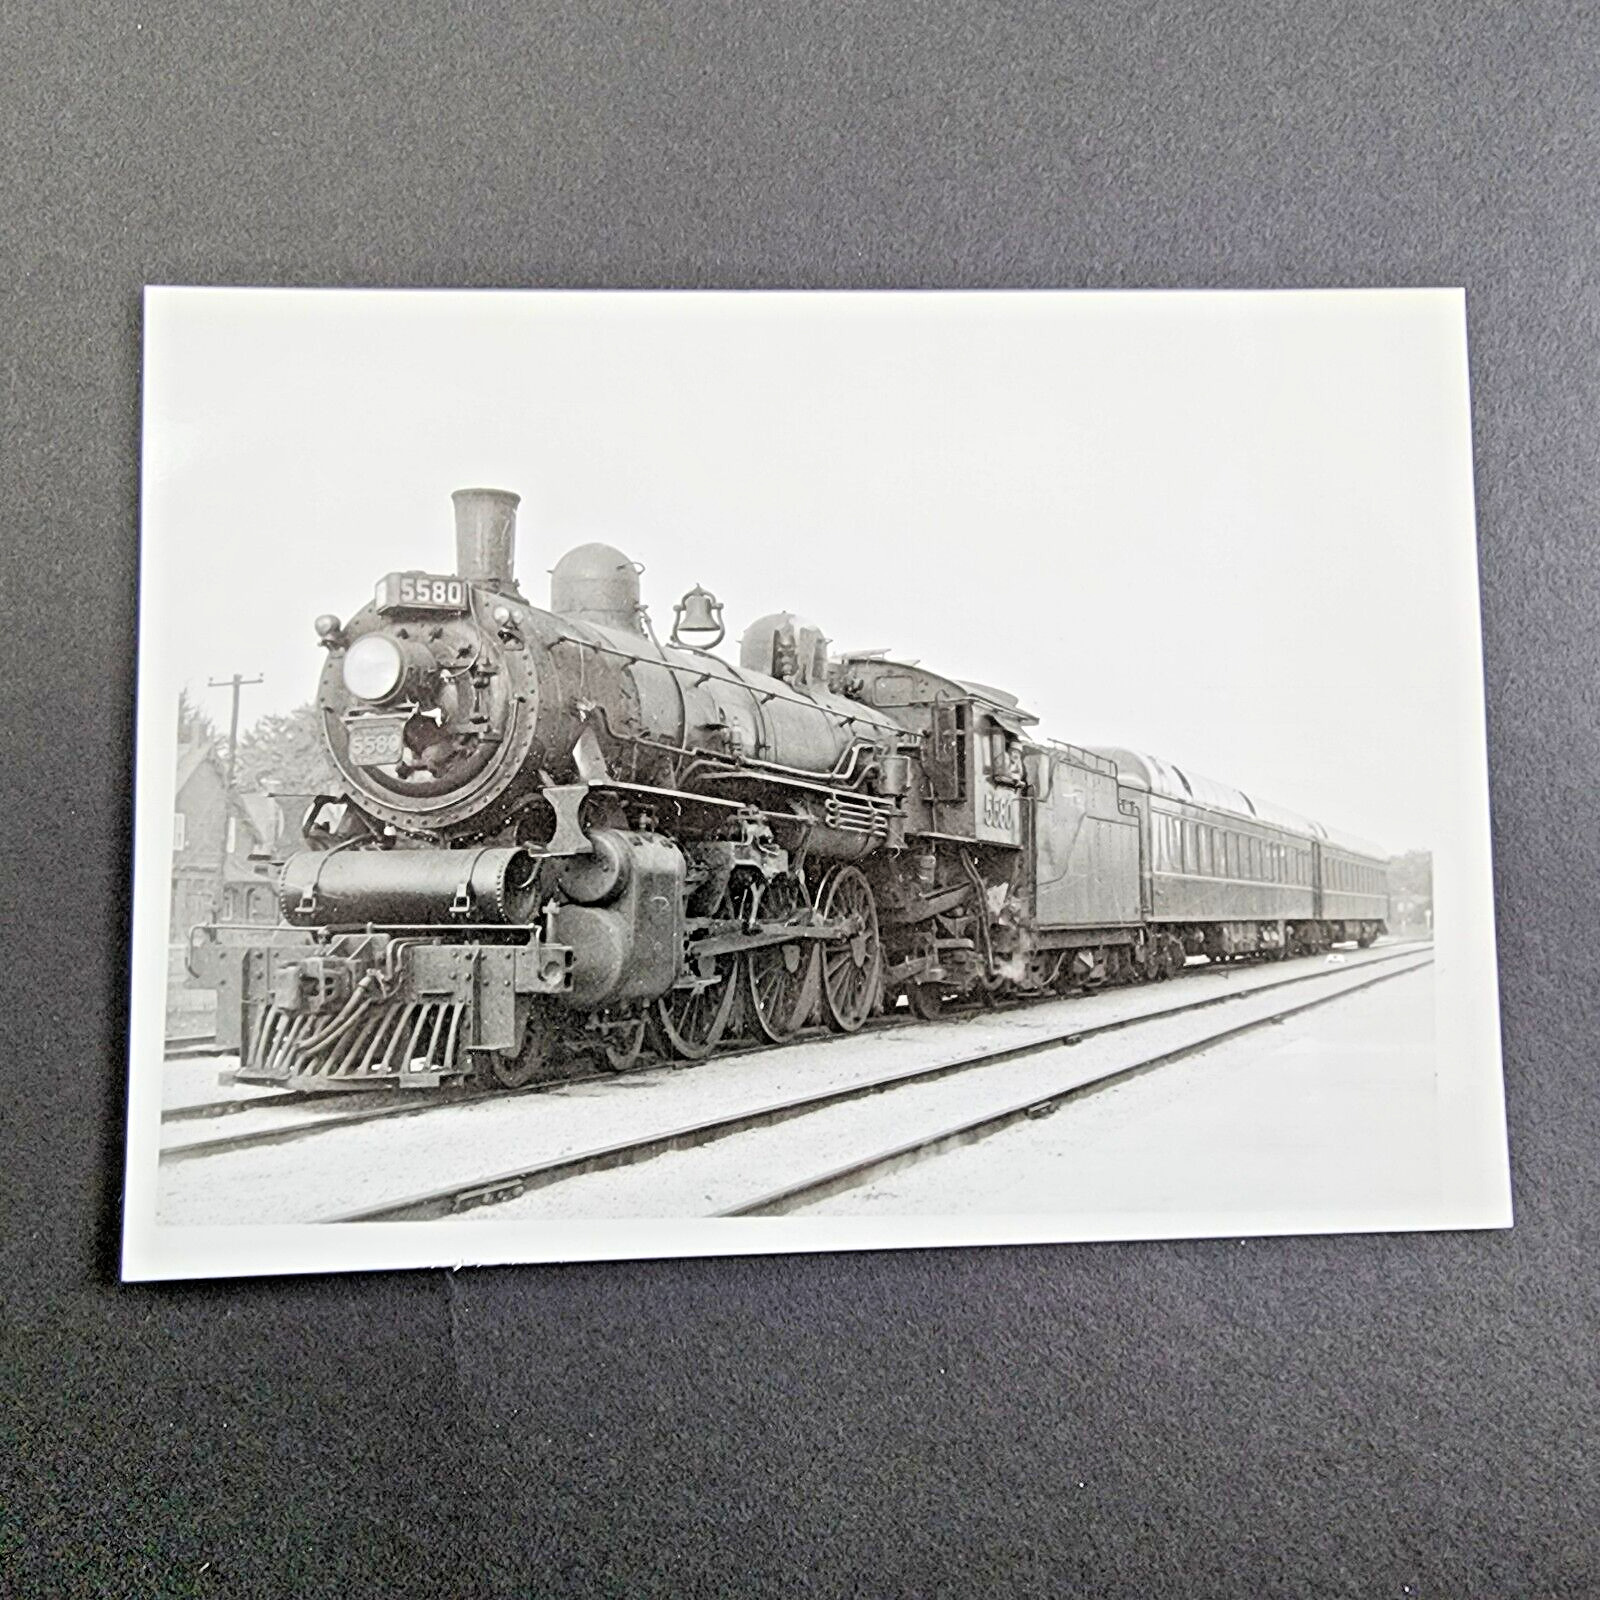 VTG 5x7  Steam Locomotive Photo, CNR 5580 4-6-2 July 1958 Stratford Ontario